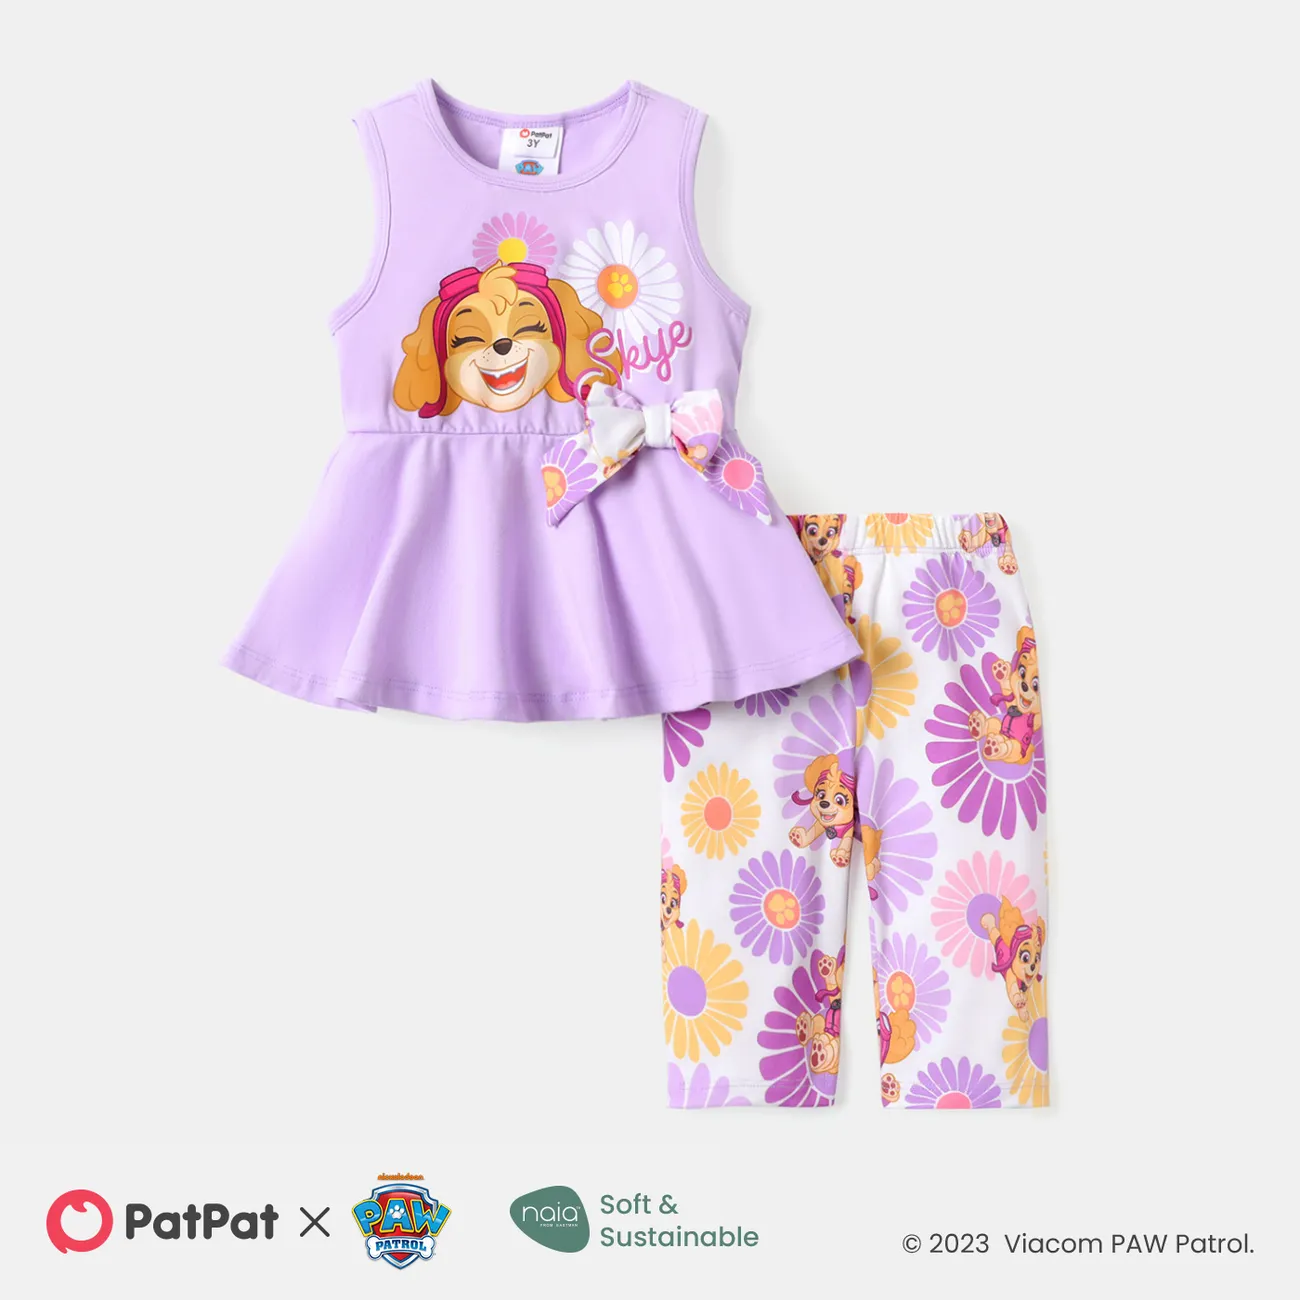 PAW Patrol 2pcs Toddler Girl Cotton Bowknot Design Sleeveless Tee and Naia Floral Print Shorts Set  big image 1